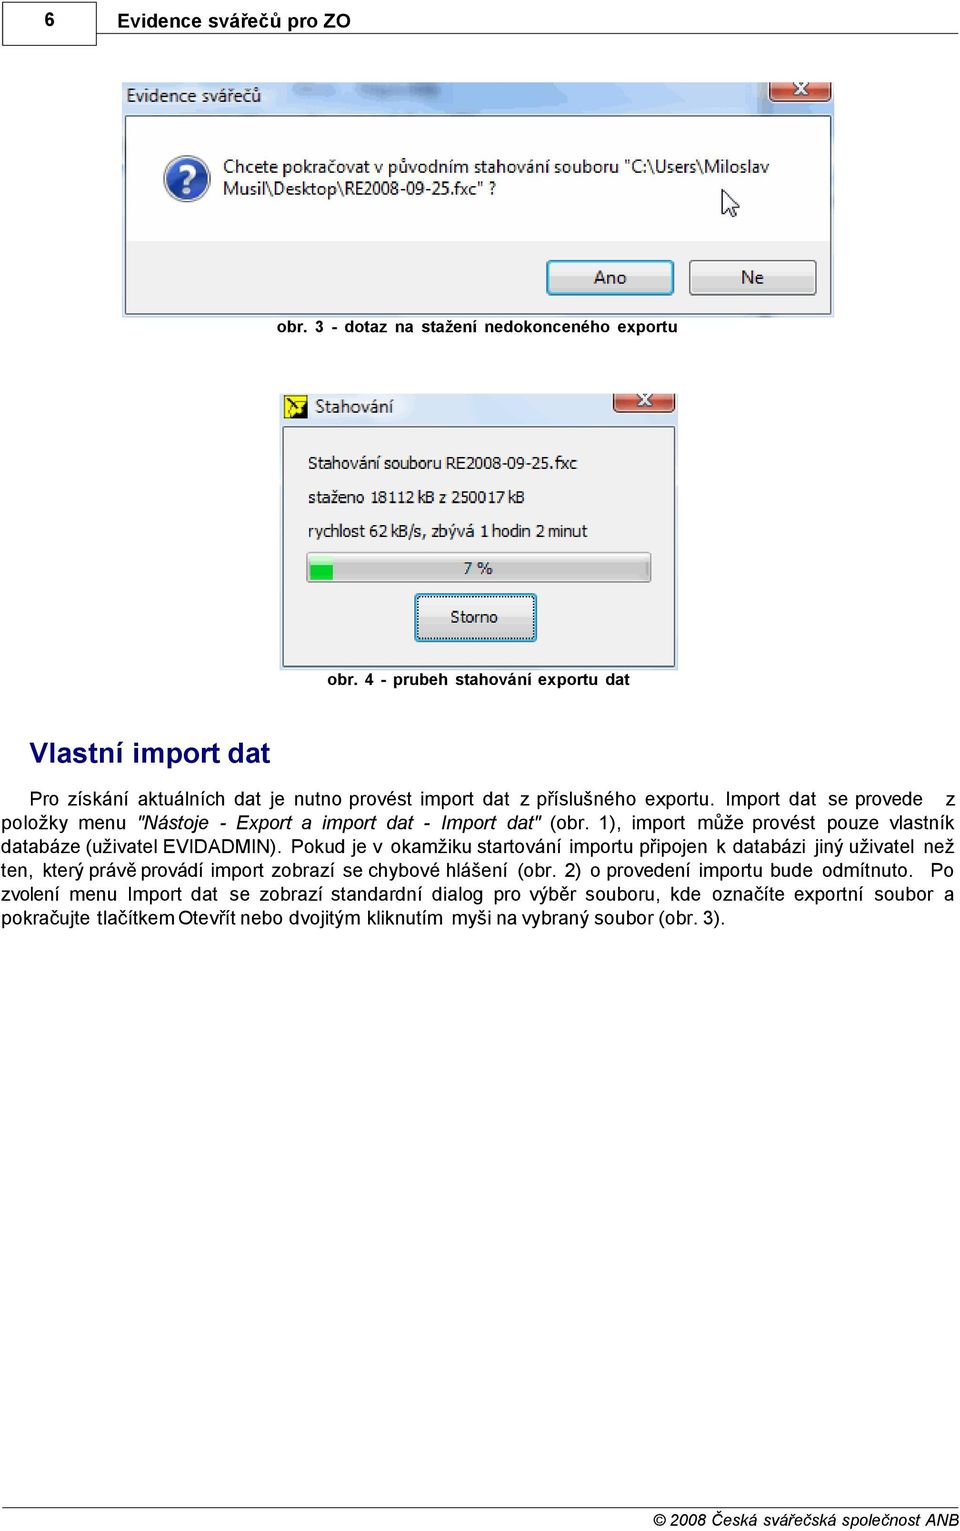 Import dat se provede z položky menu "Nástoje - Export a import dat - Import dat" (obr. 1), import může provést pouze vlastník databáze (uživatel EVIDADMIN).